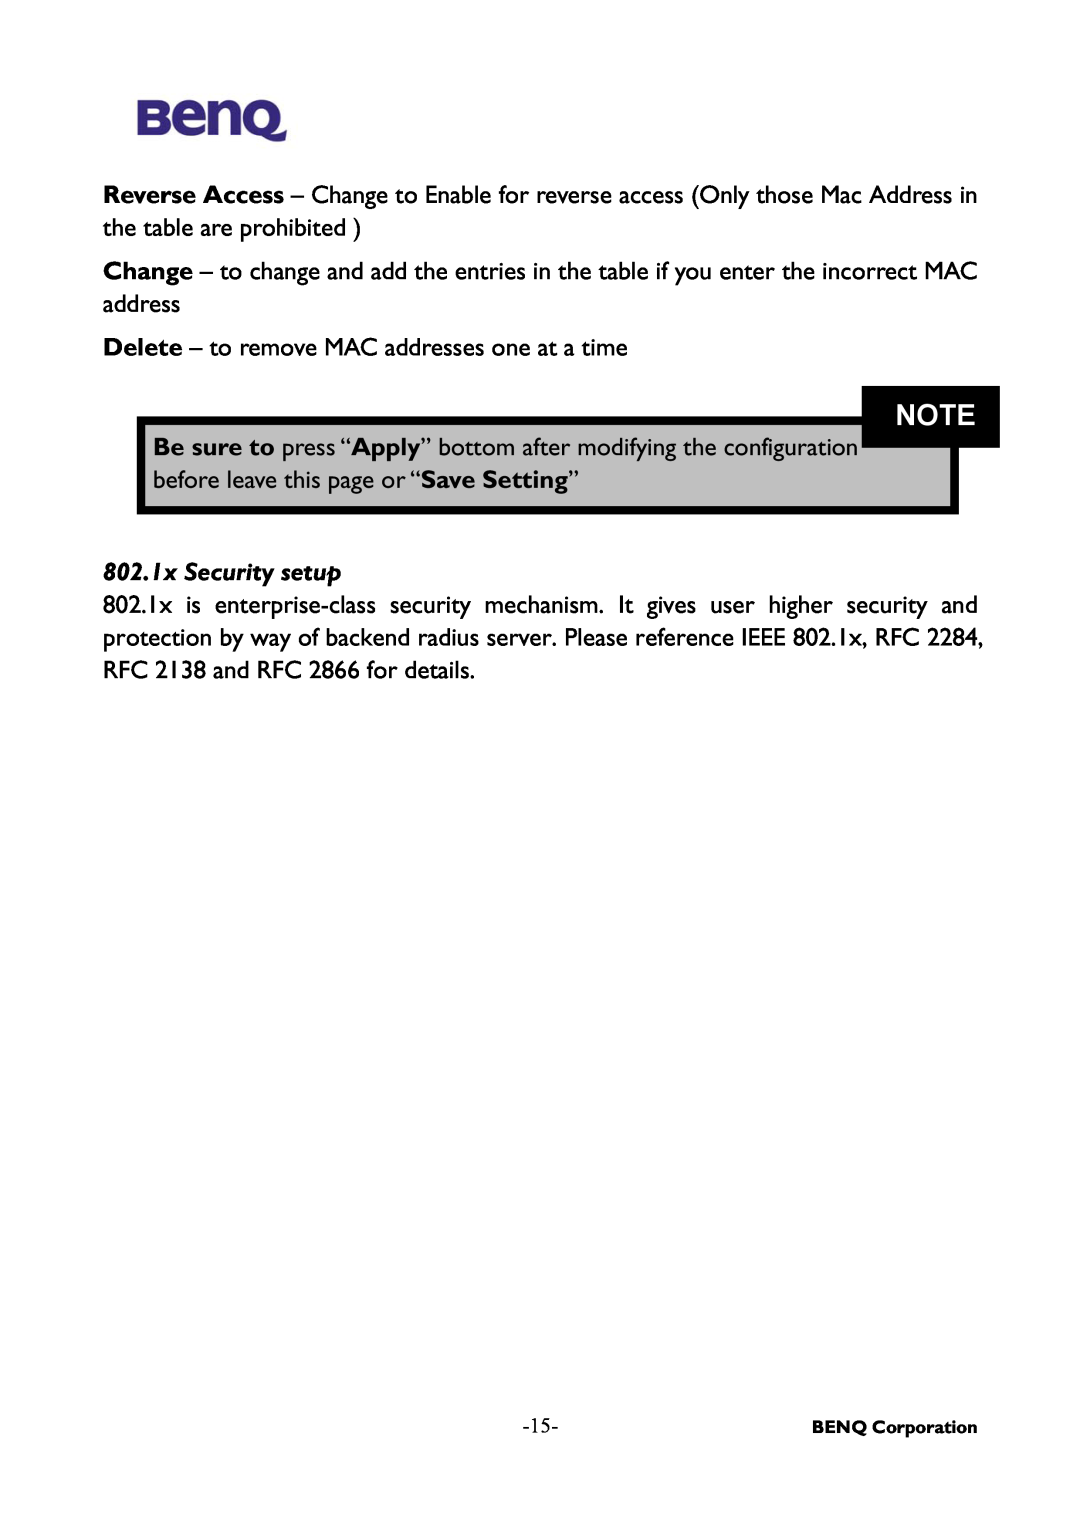 BenQ AWL-500 user manual 802.1x Security setup 